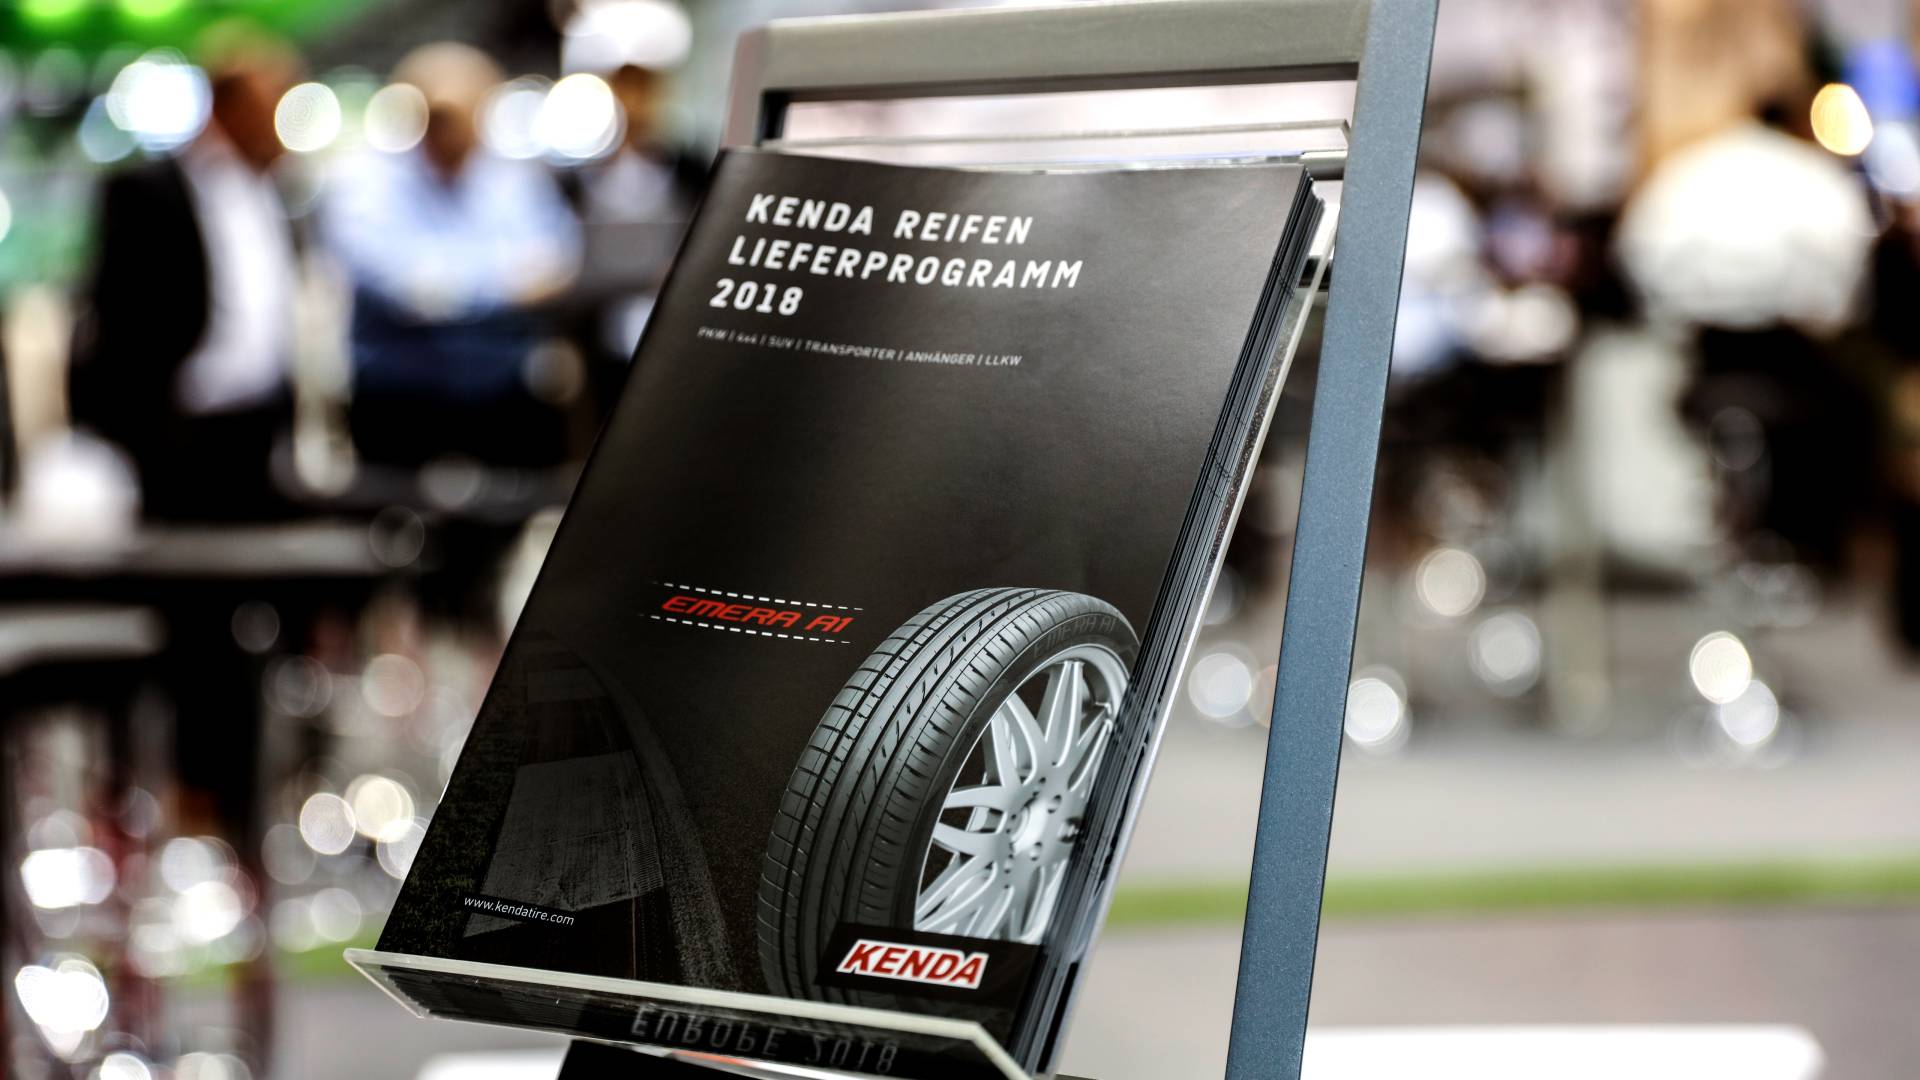 Darstellung des KENDA Reifen-Lieferprogramms 2018